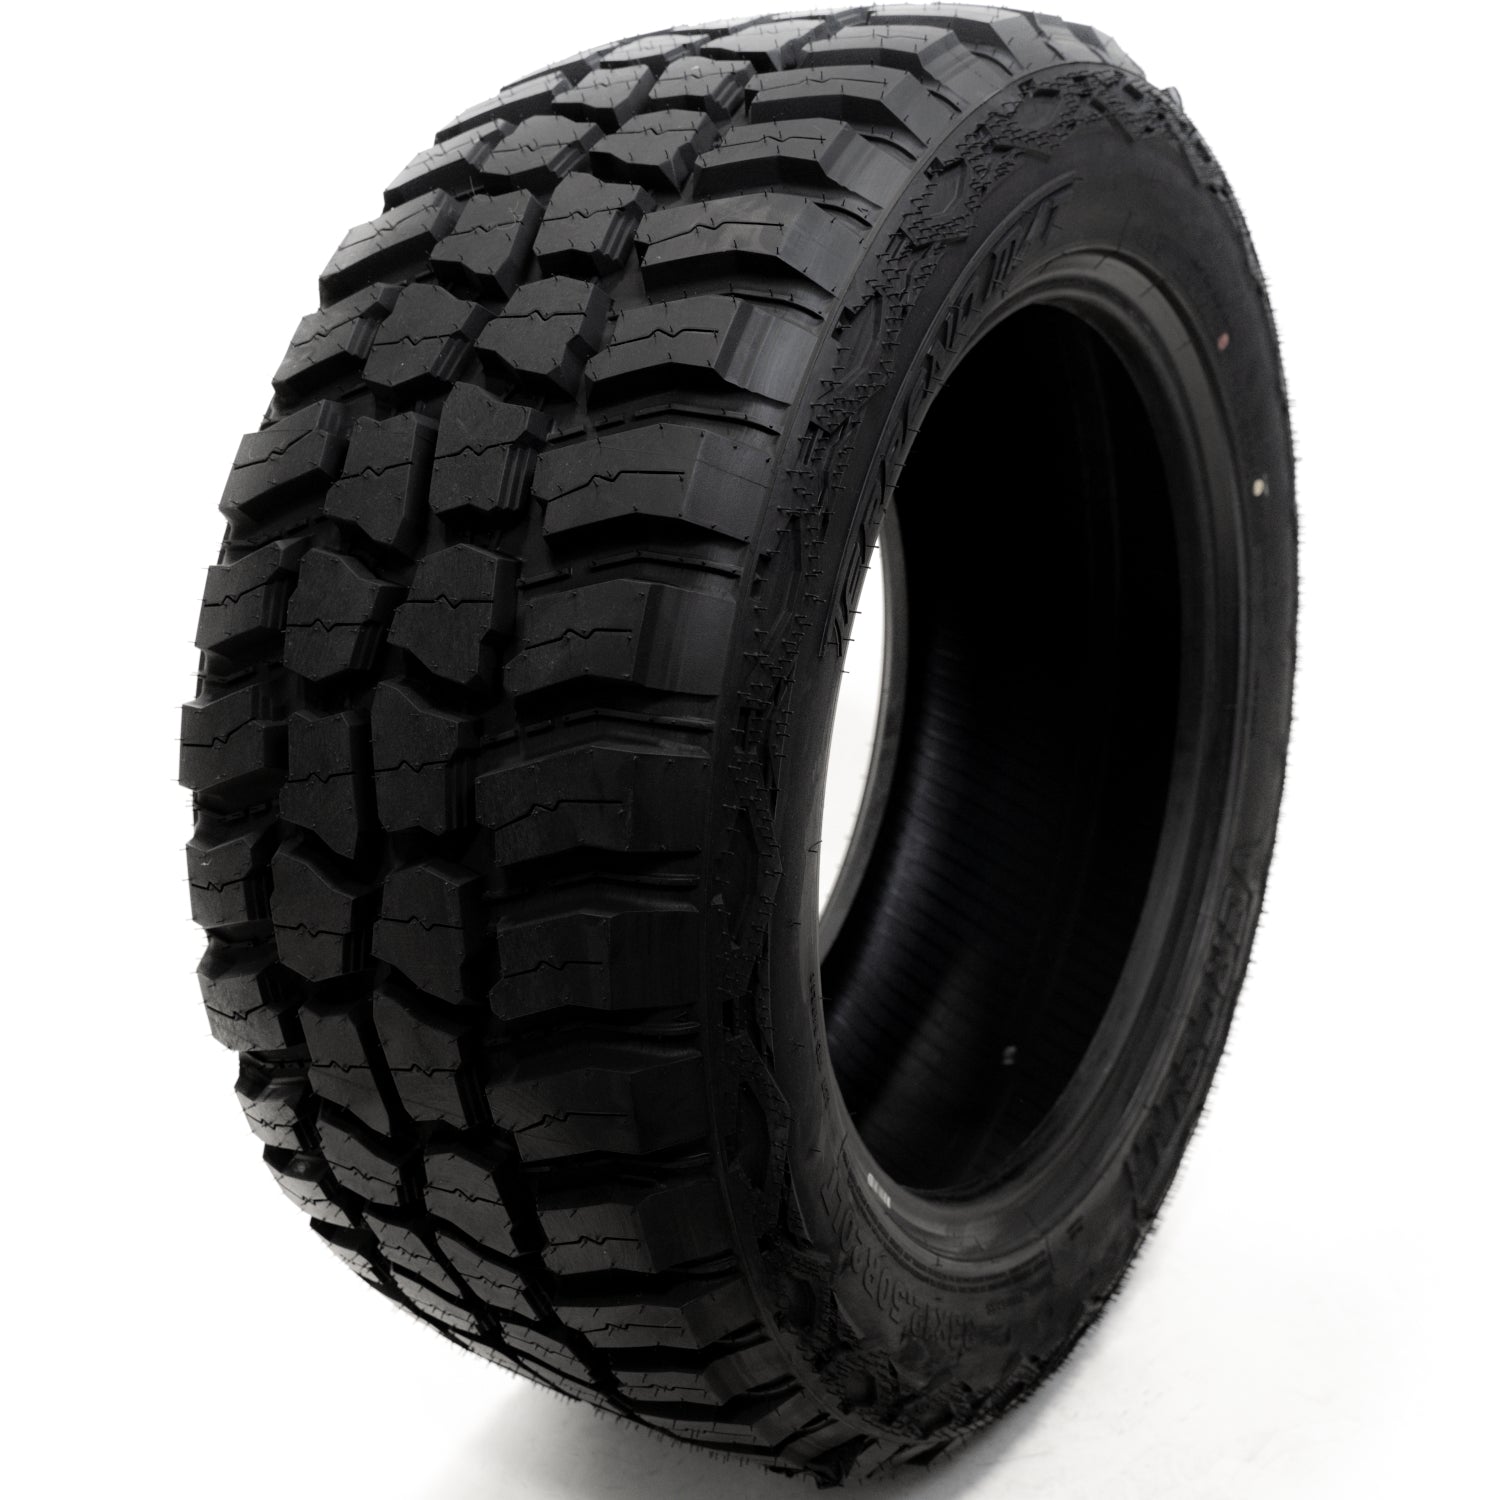 VERCELLI TERRENO M/T 32X11.50R15LT Tires